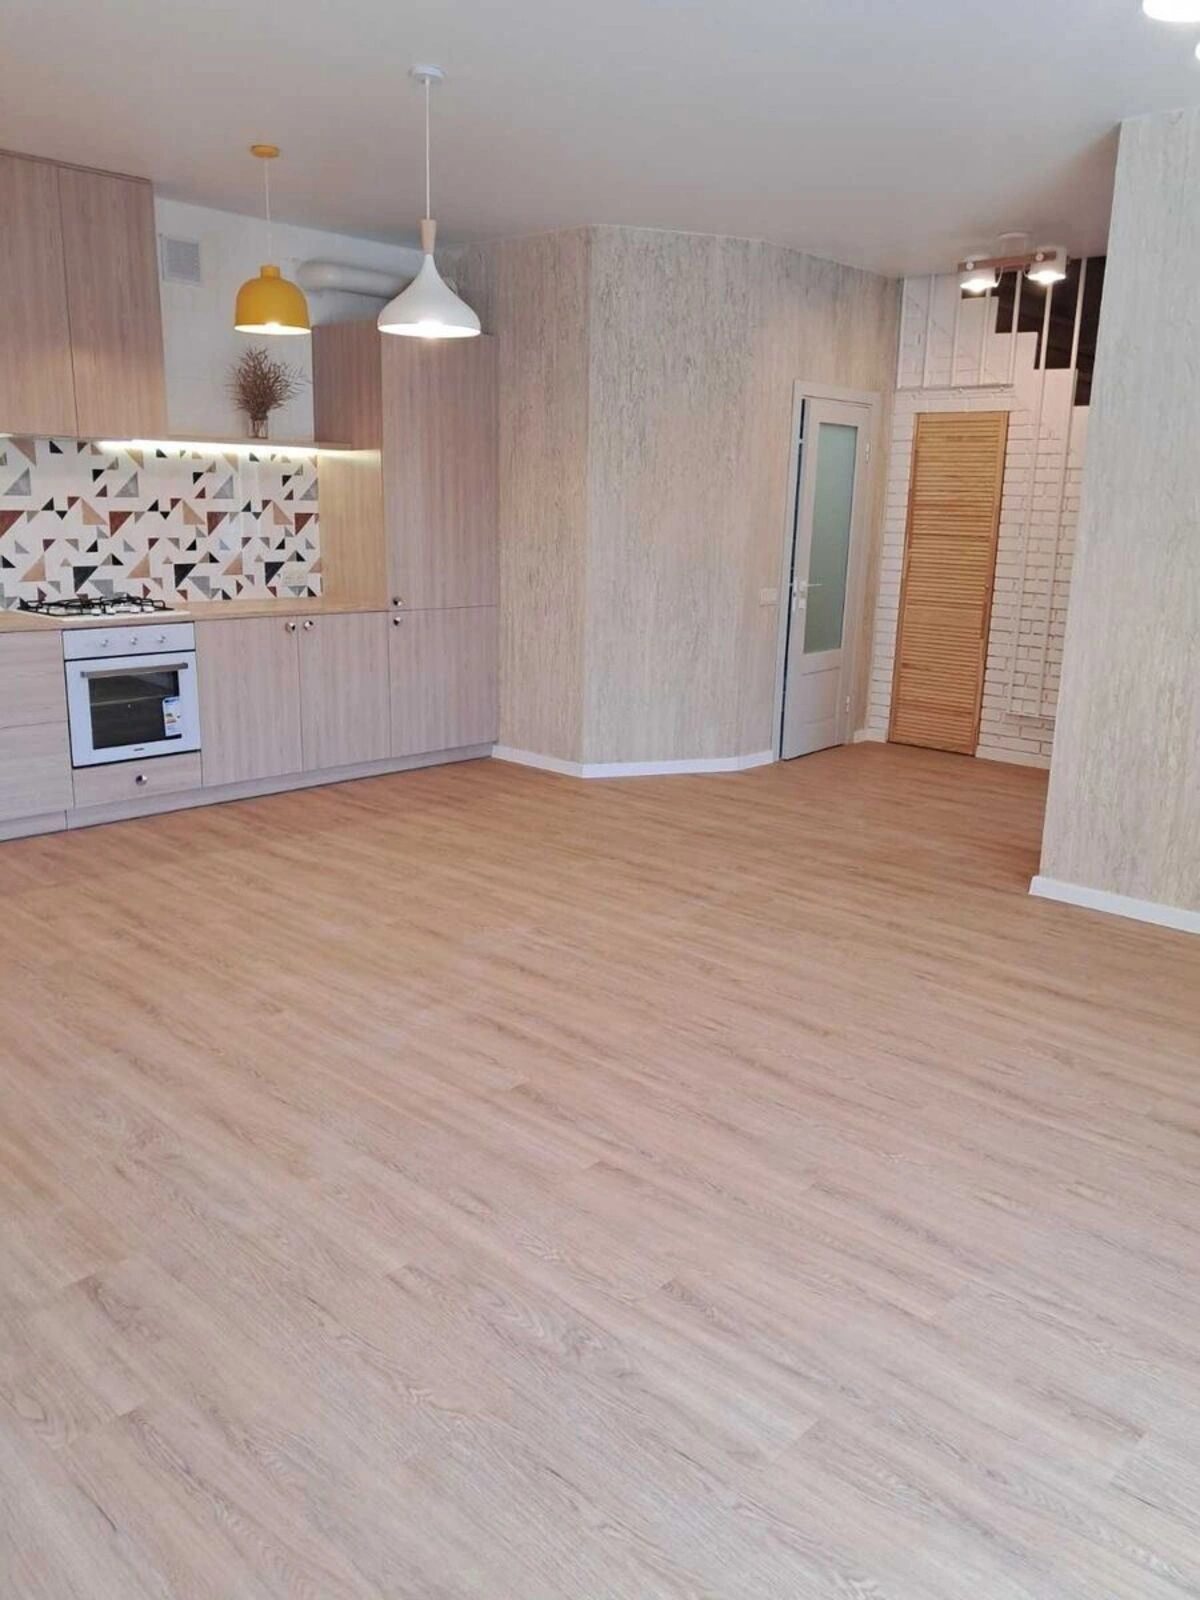 House for sale. 108 m², 2 floors. Traktornyy prov., Kropyvnytskyy. 